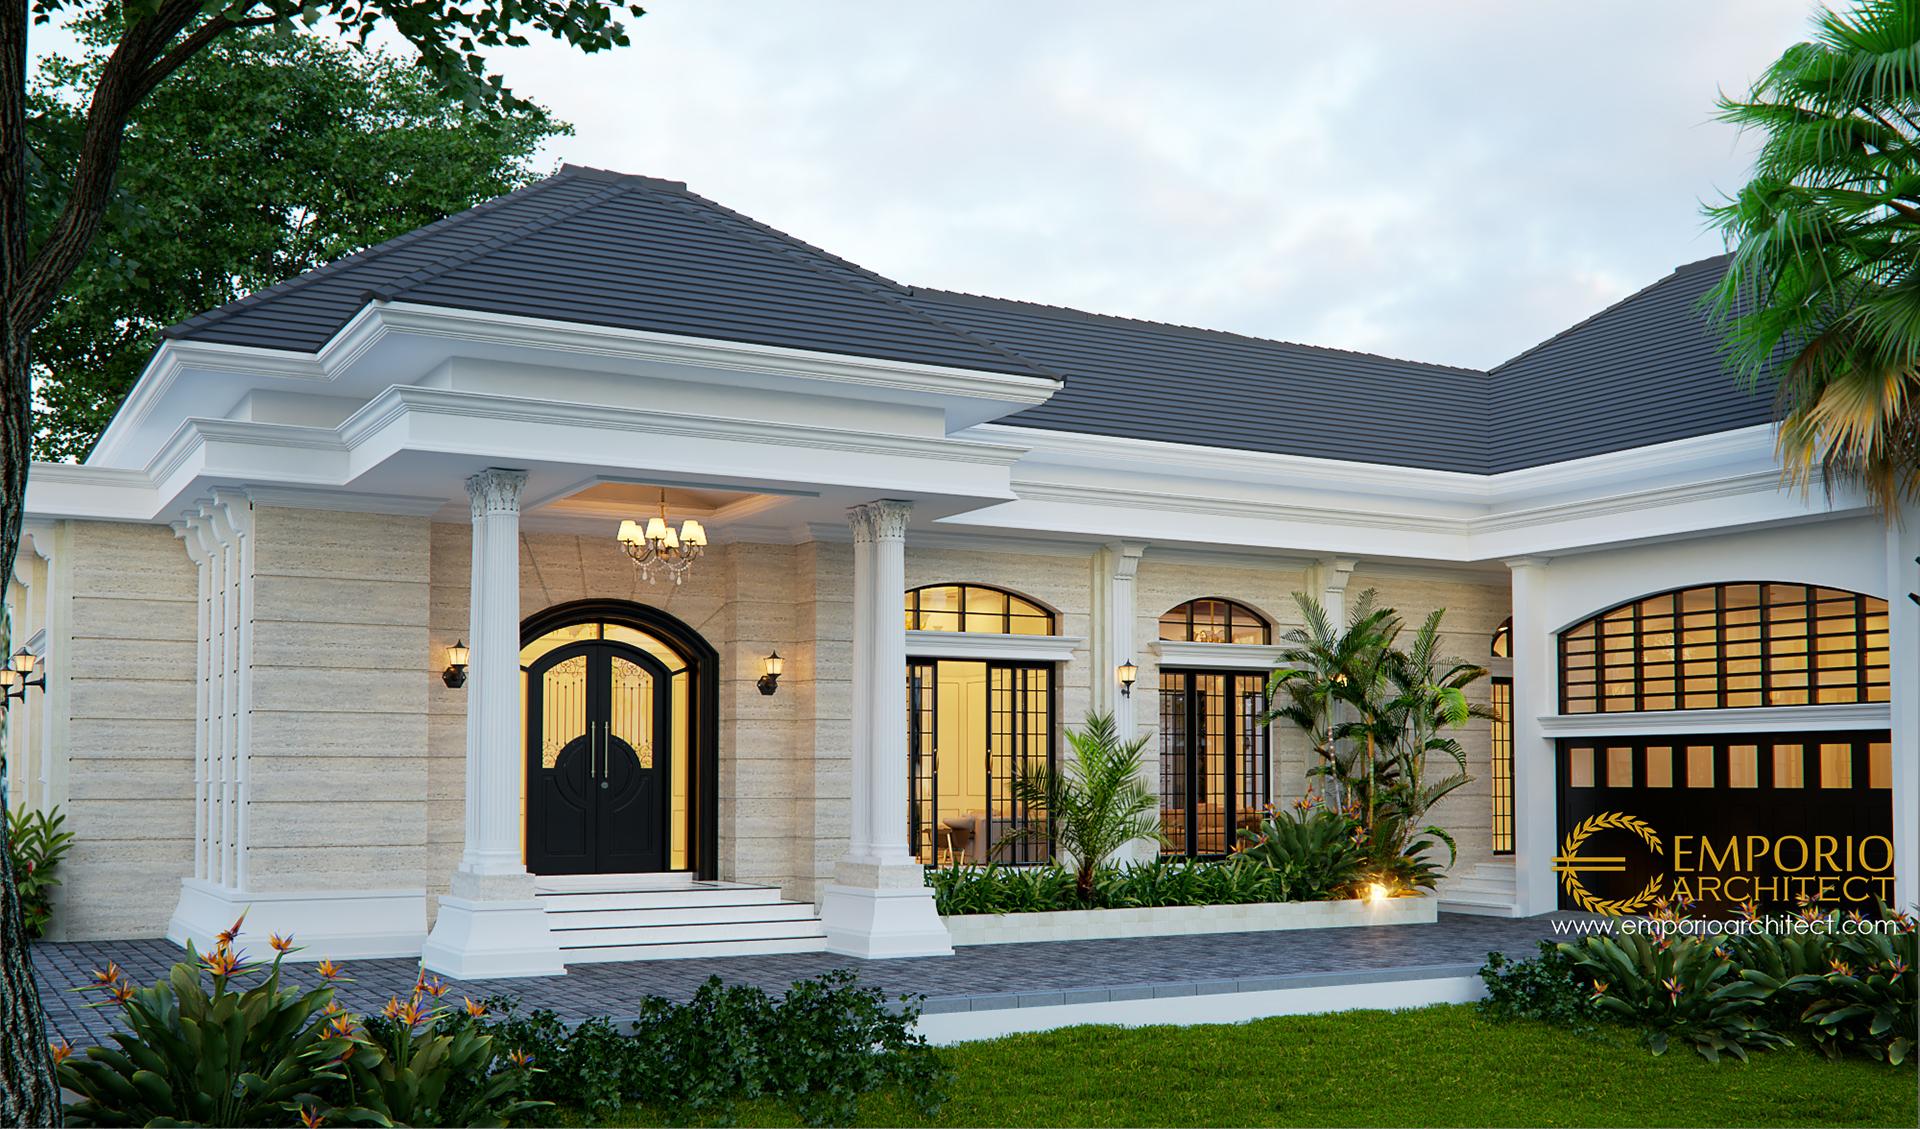 Rumah Klasik Modern 1 Lantai - Desain Rumah Tangerang Desain Rumah ...